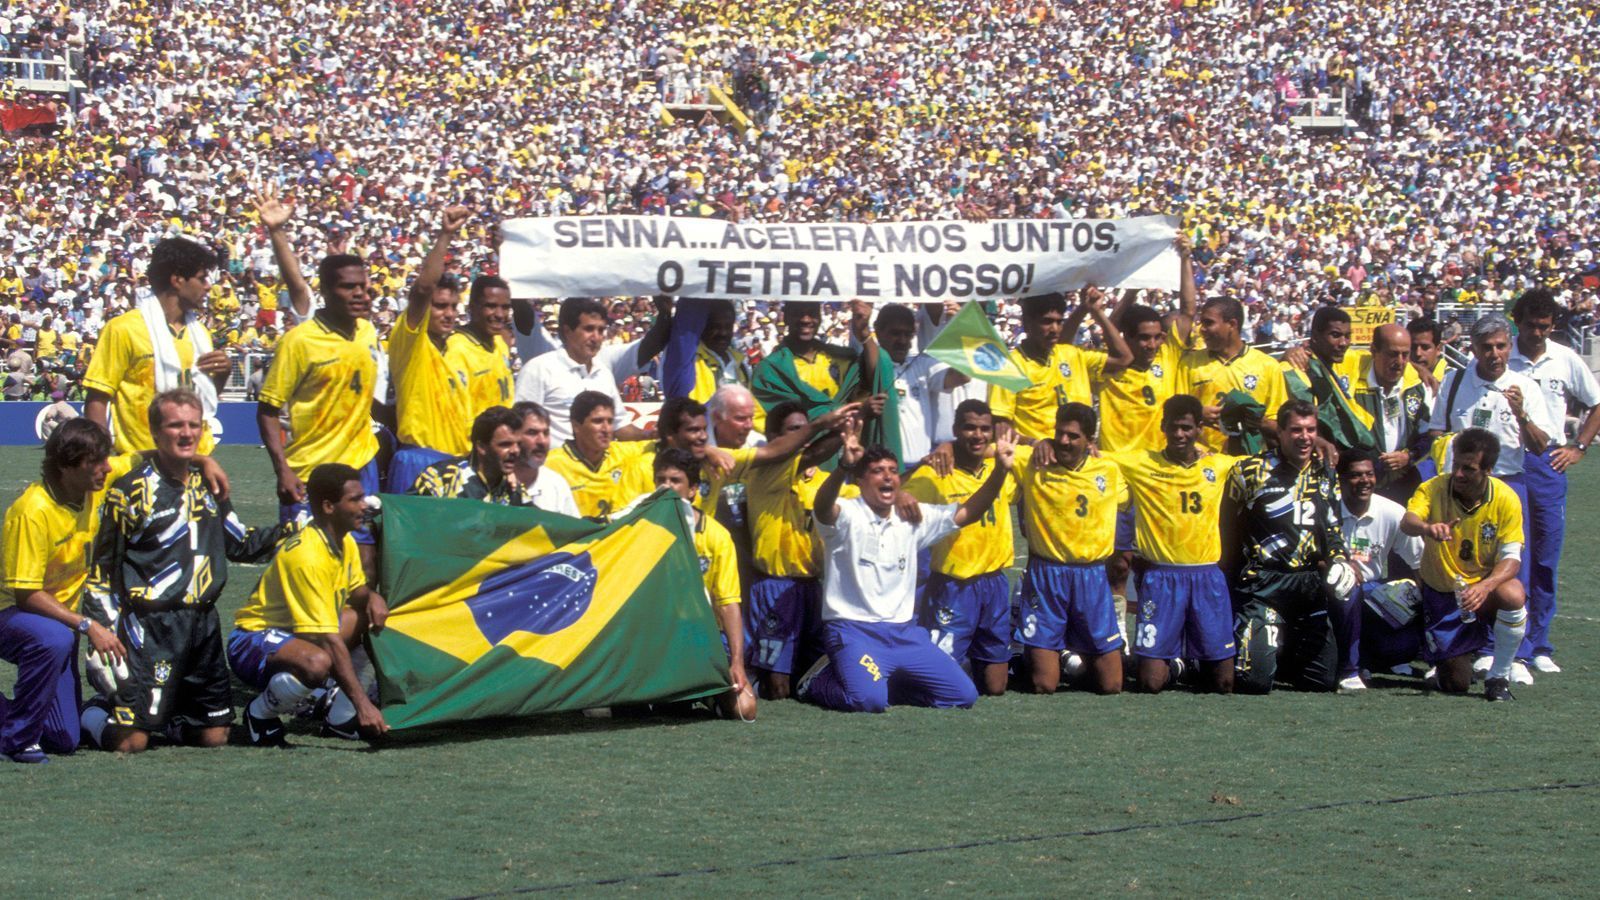 
                <strong>Ayrton Senna: Als die Formel 1 ihre Seele verlor</strong><br>
                Bei der Fußball-WM 1994 in den USA kurz nach nach dessen Tod erweist die brasilianische Nationalmannschaft Senna auf ihre Weise die letzte Ehre, mit dem Plakat: "Senna ... wir haben gemeinsam beschleunigt. Das Tetra (Vier; damit ist der vierte WM-Titel Brasiliens gemeint, Anm. d. Red.) ist unser!"
              